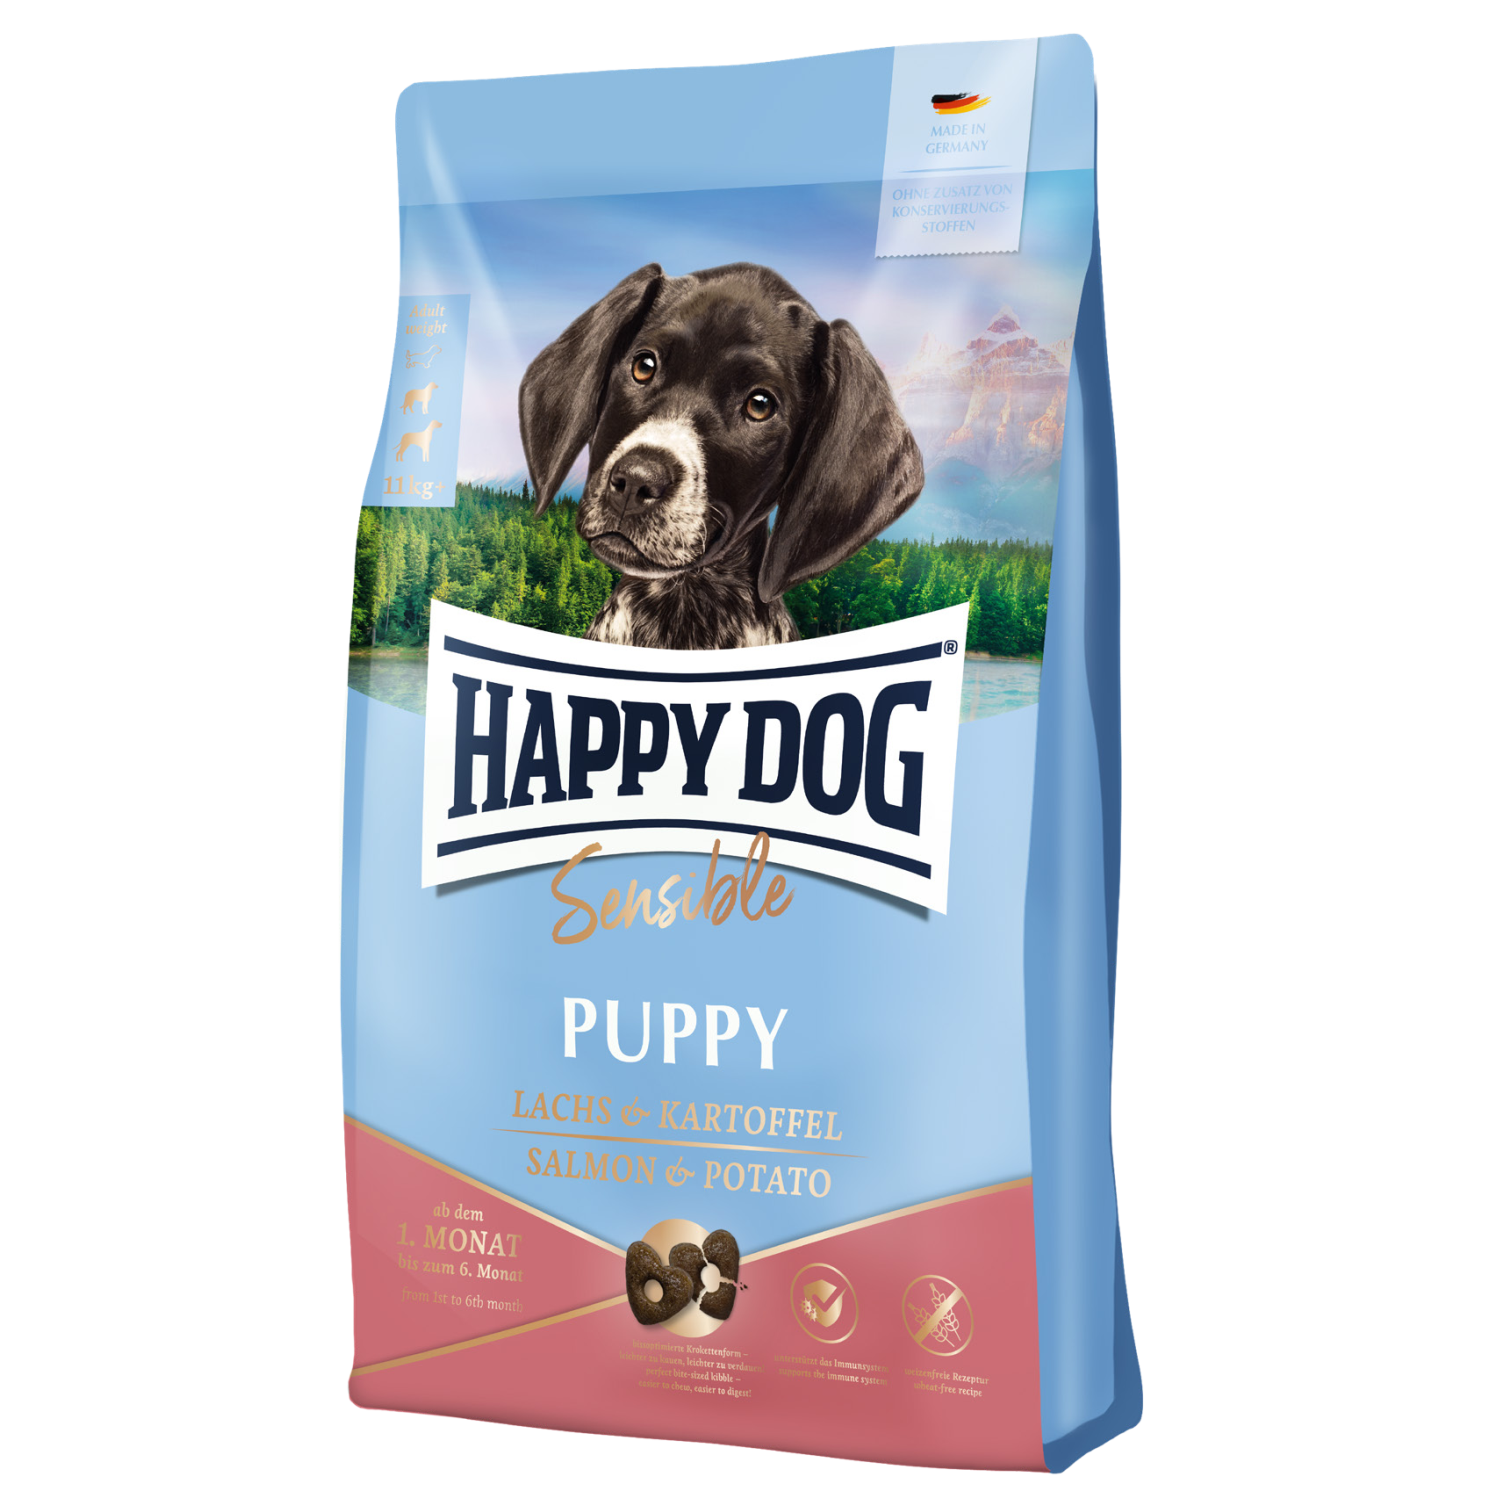 Сухой корм для щенков Happy Dog Sensible Puppy Lachs & Kartoffel с лососем и картофелем, 1 кг (61002) - фото 1